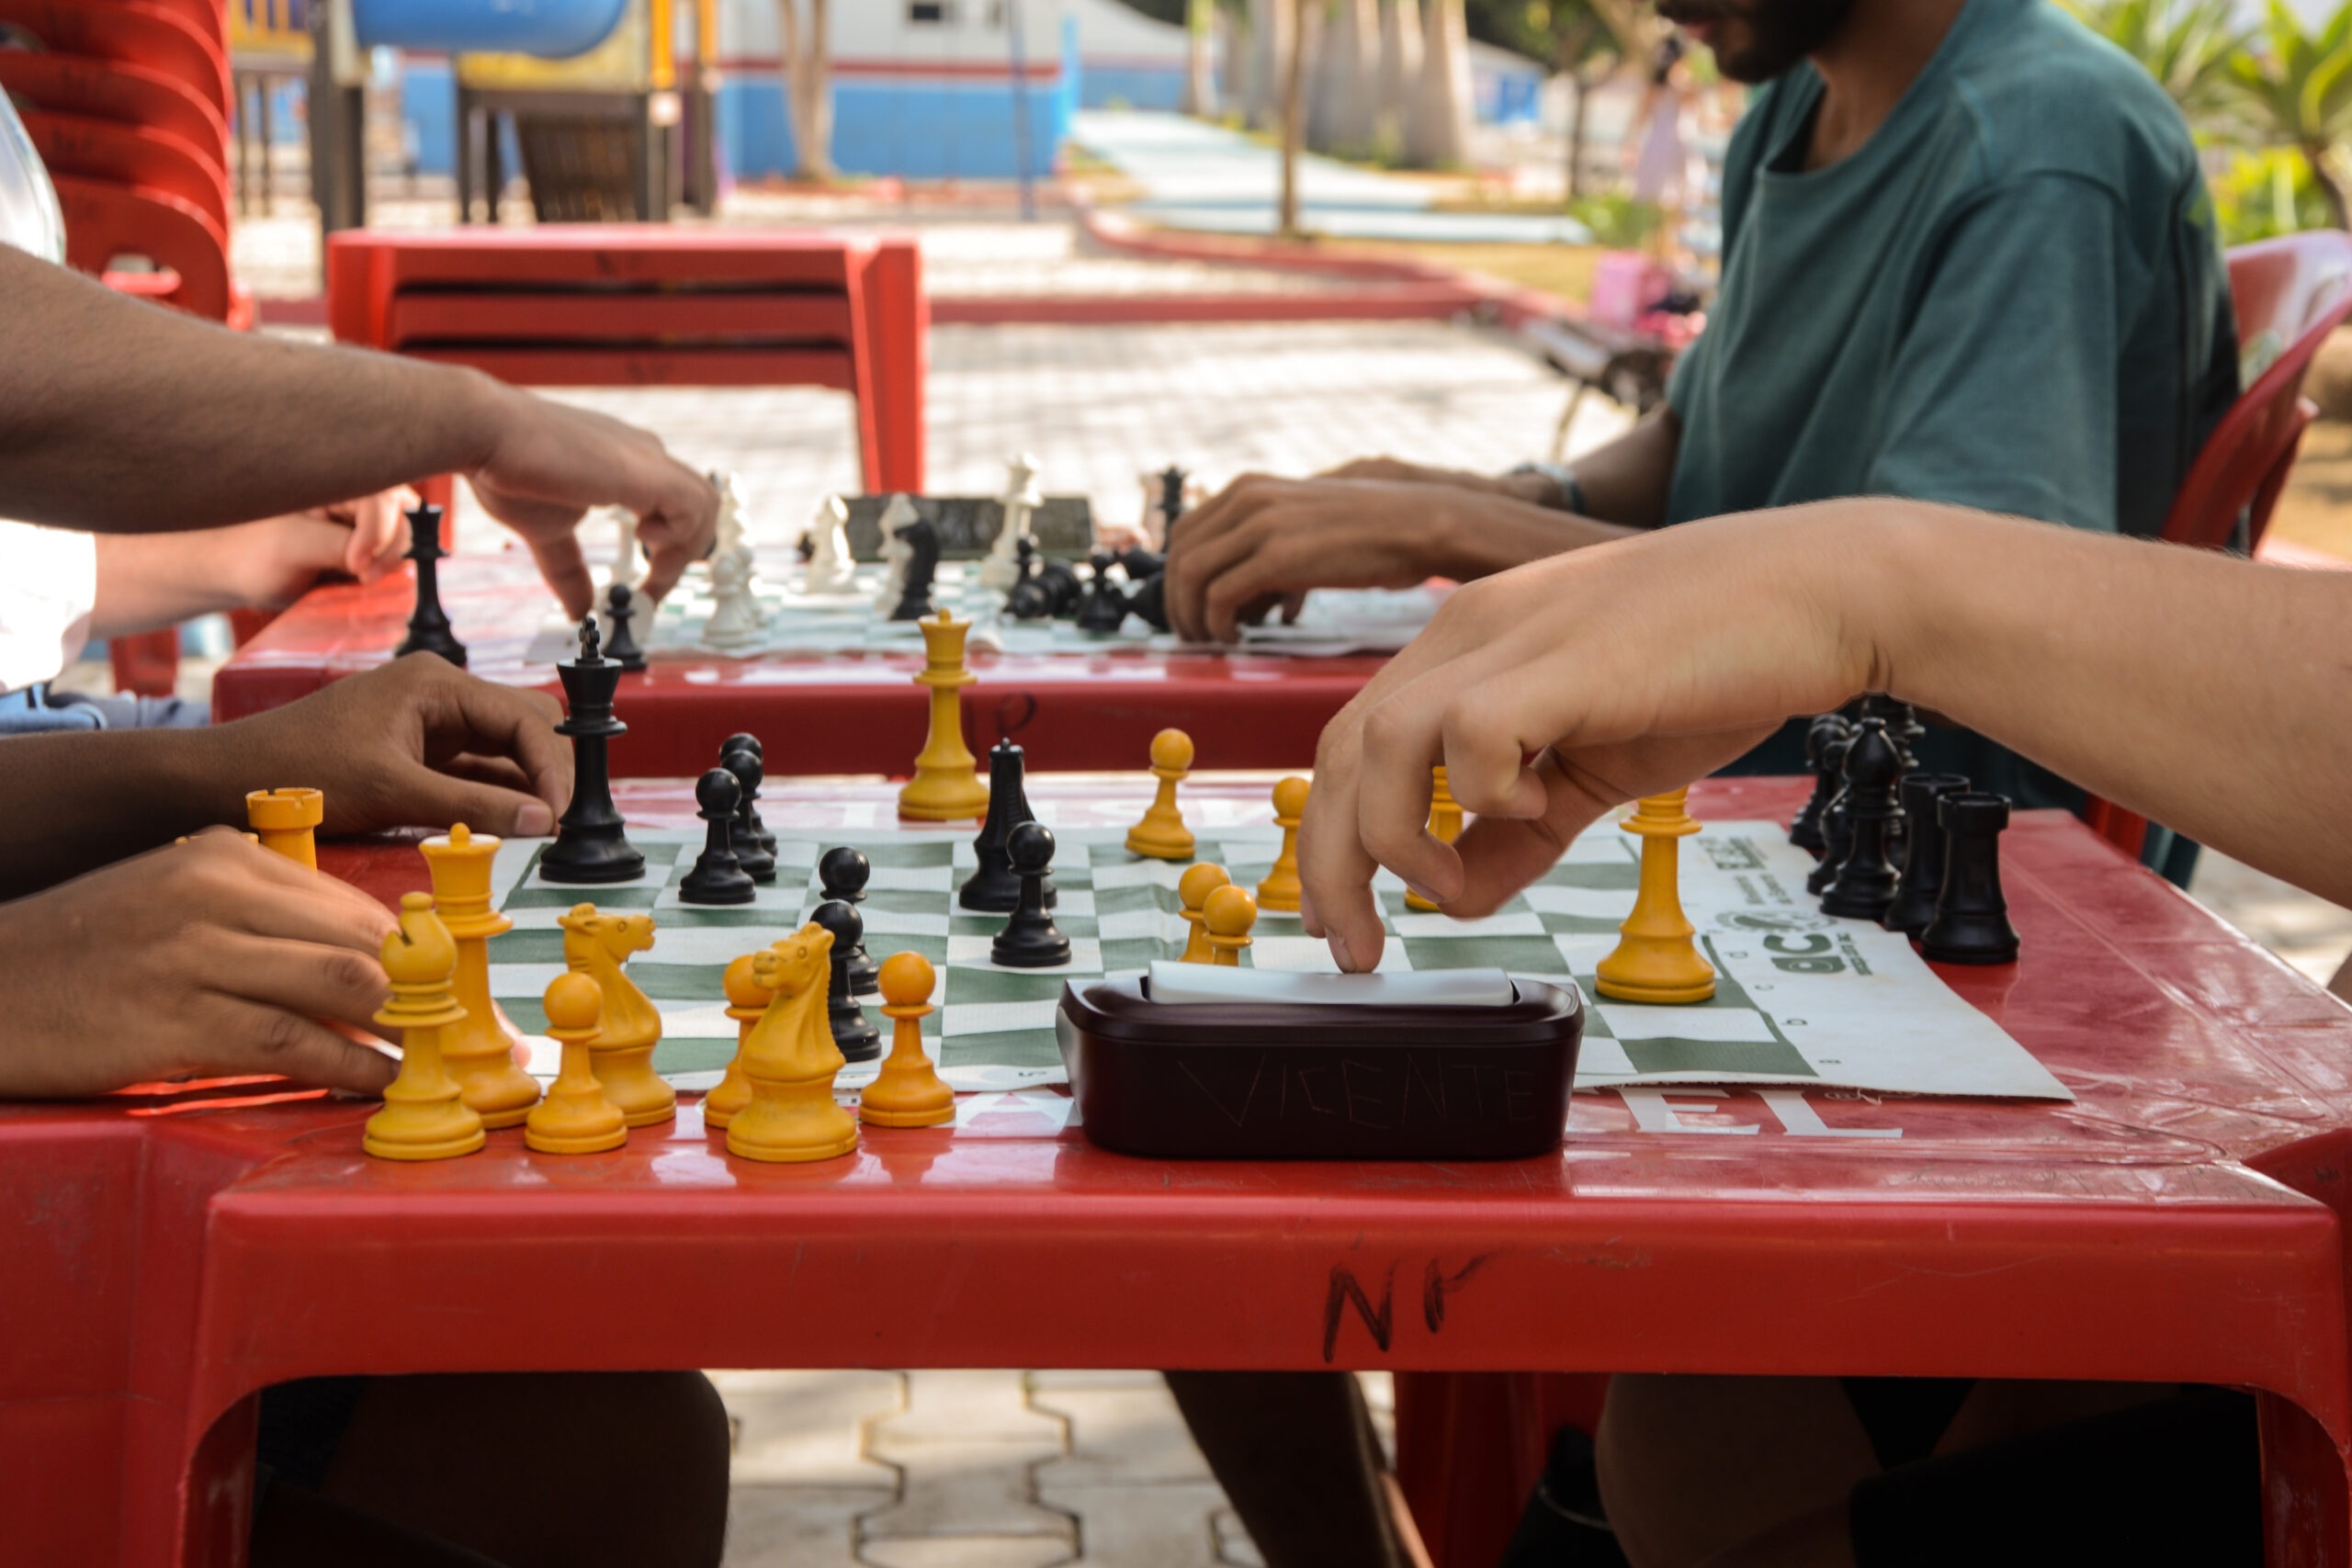 Enxadrista mostra benefícios do esporte e convida patenses para praticarem  xadrez